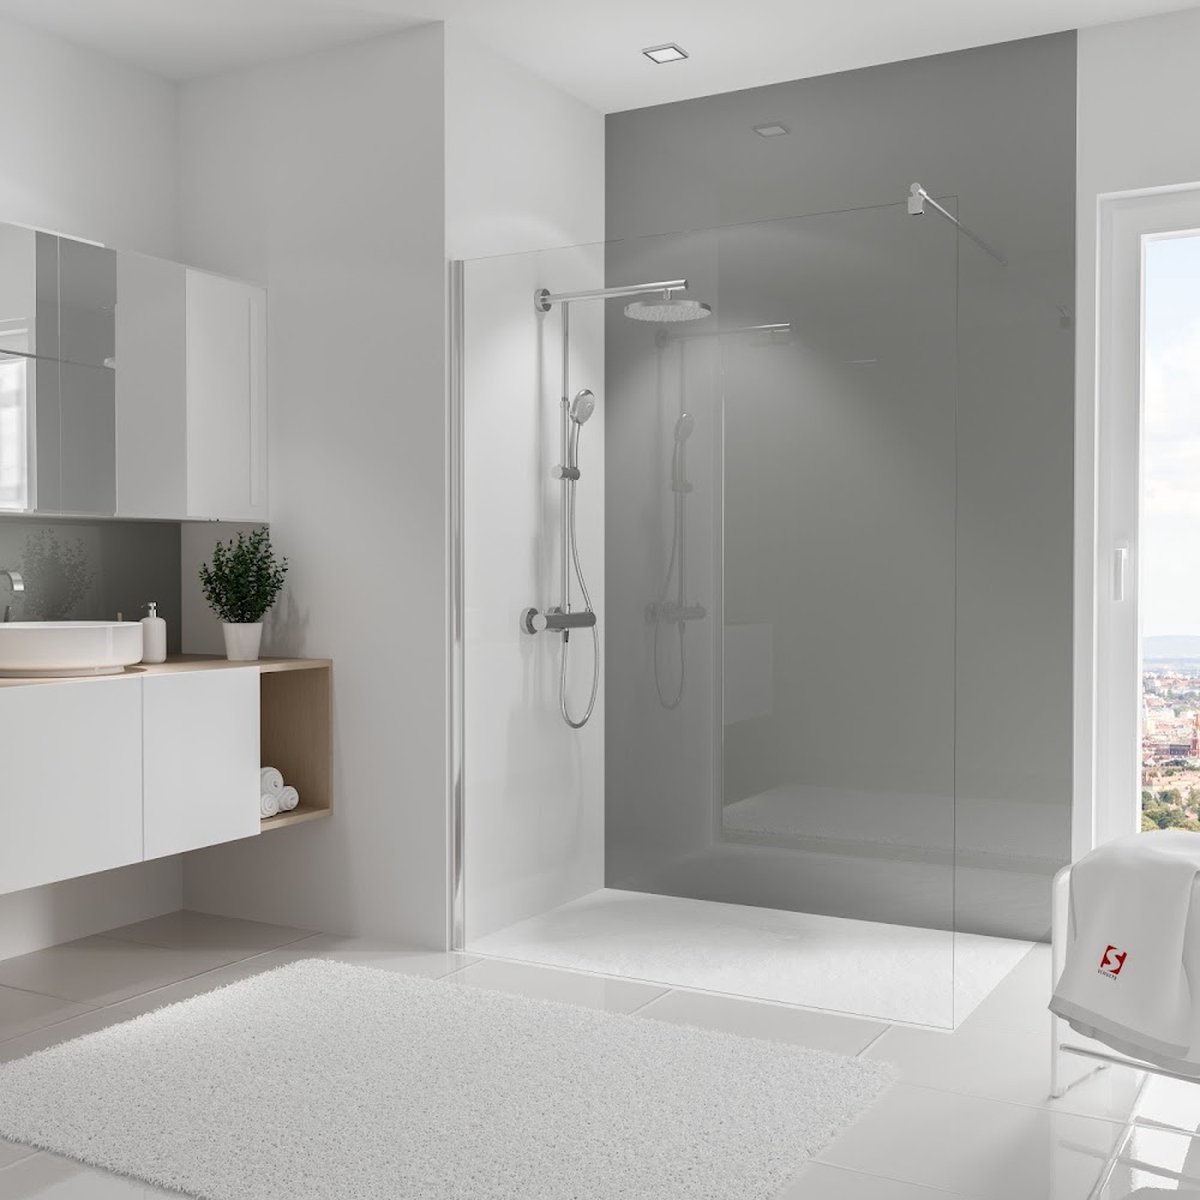 Schulte Deco Design Brio - hoogglans reflex grijs - 150x255 - zelf inkortbaar - wanddecoratie - muurdecoratie - badkamer wandpaneel - muurbekleding